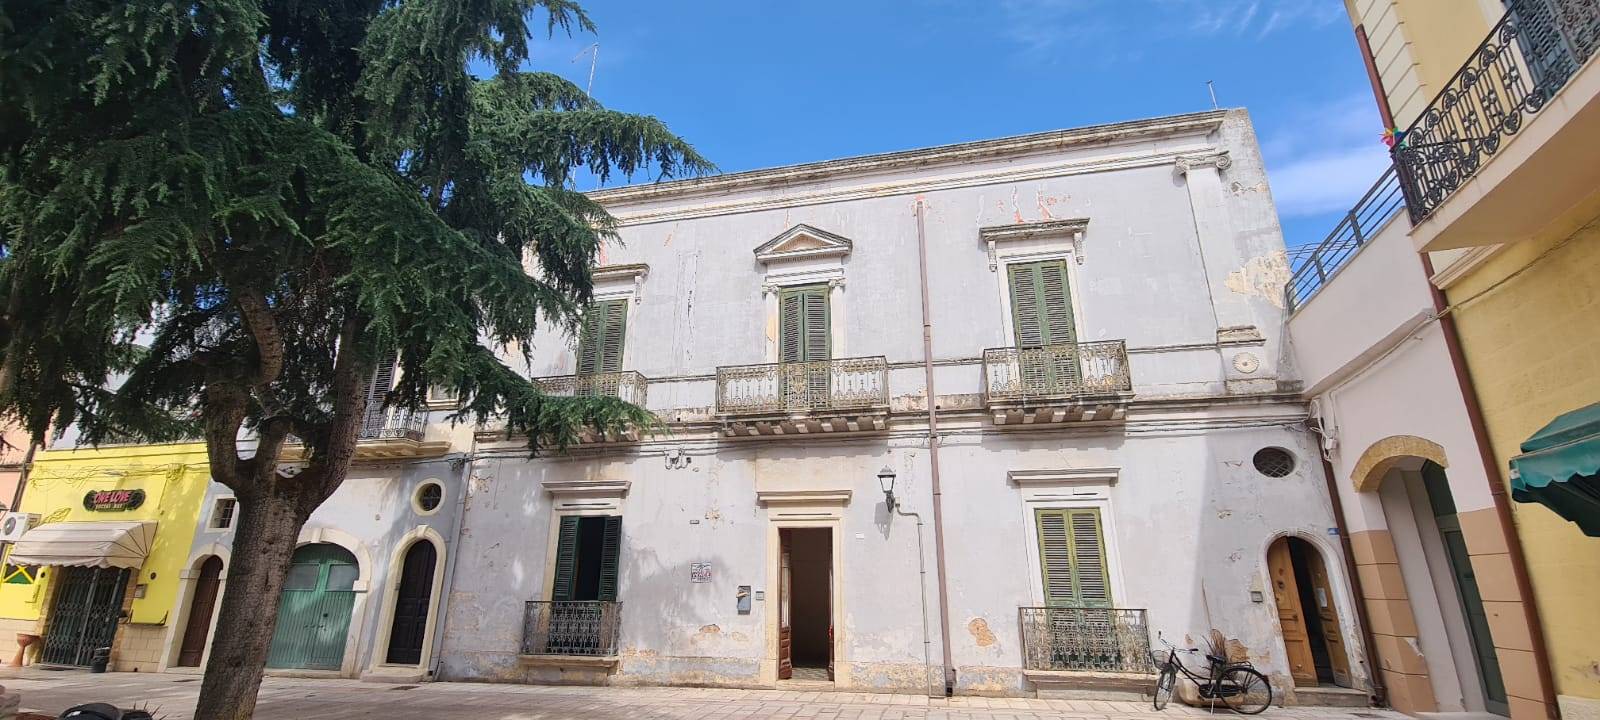 Palazzo / Stabile in vendita a San Pietro Vernotico, 18 locali, prezzo € 150.000 | CambioCasa.it